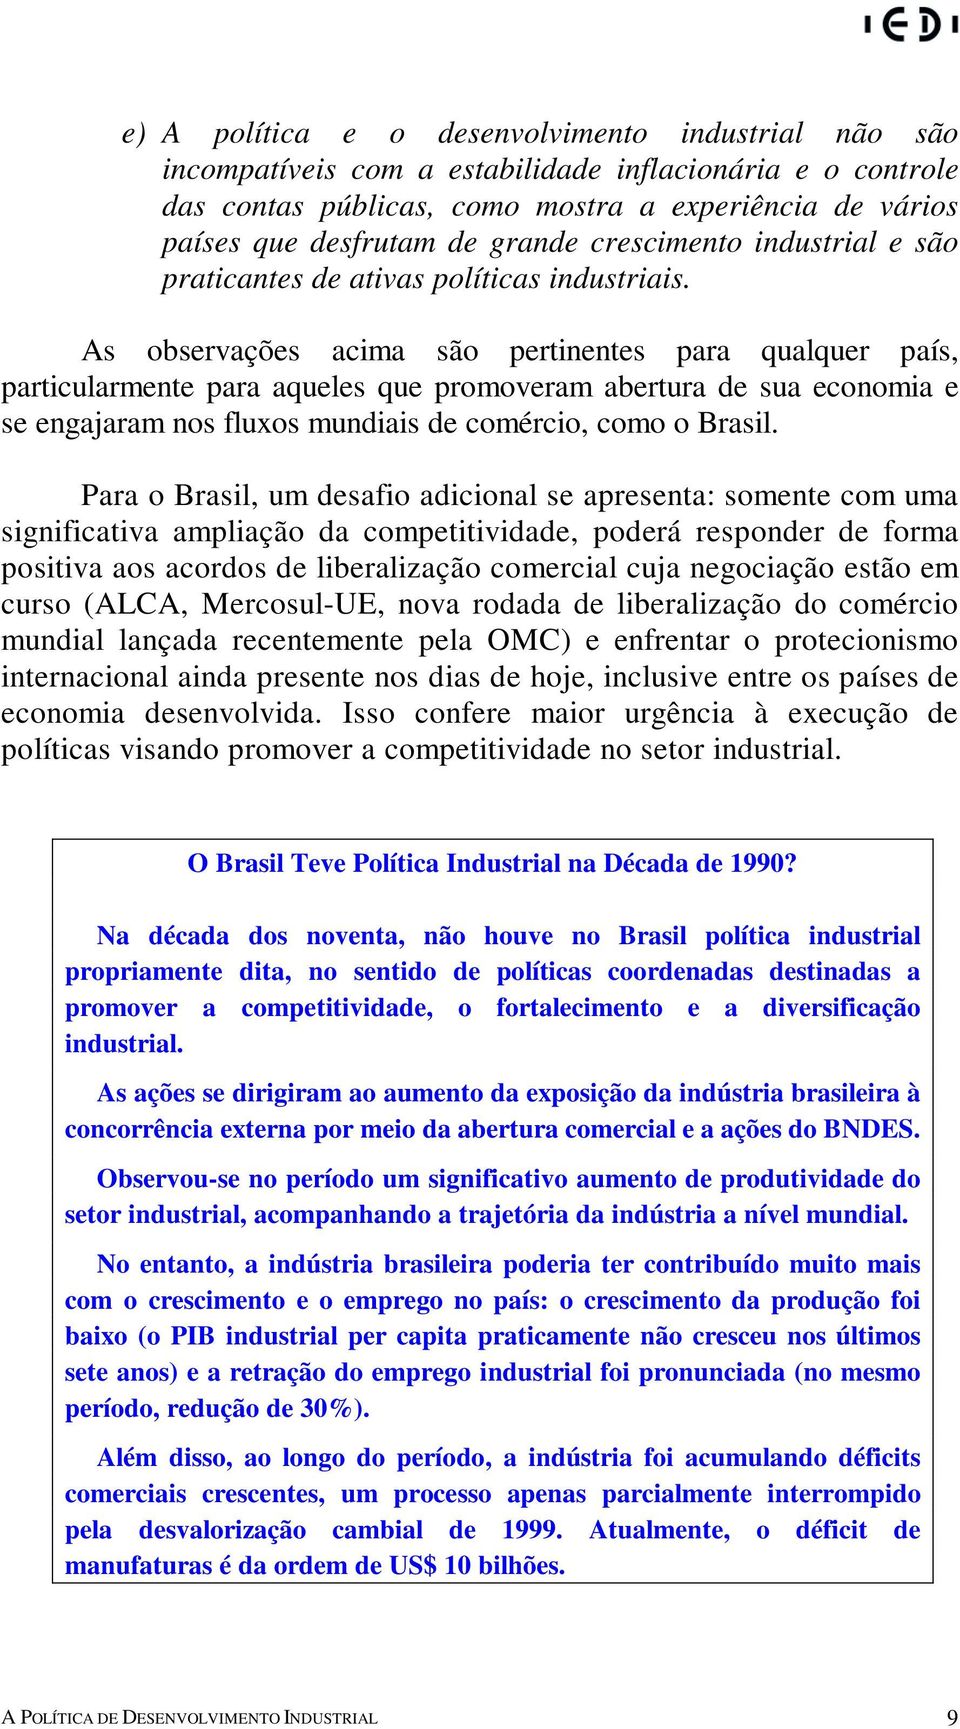 As observações acima são pertinentes para qualquer país, particularmente para aqueles que promoveram abertura de sua economia e se engajaram nos fluxos mundiais de comércio, como o Brasil.